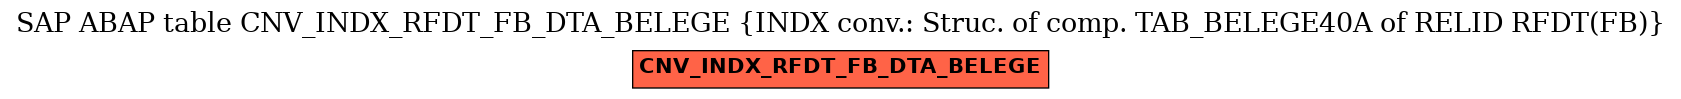 E-R Diagram for table CNV_INDX_RFDT_FB_DTA_BELEGE (INDX conv.: Struc. of comp. TAB_BELEGE40A of RELID RFDT(FB))